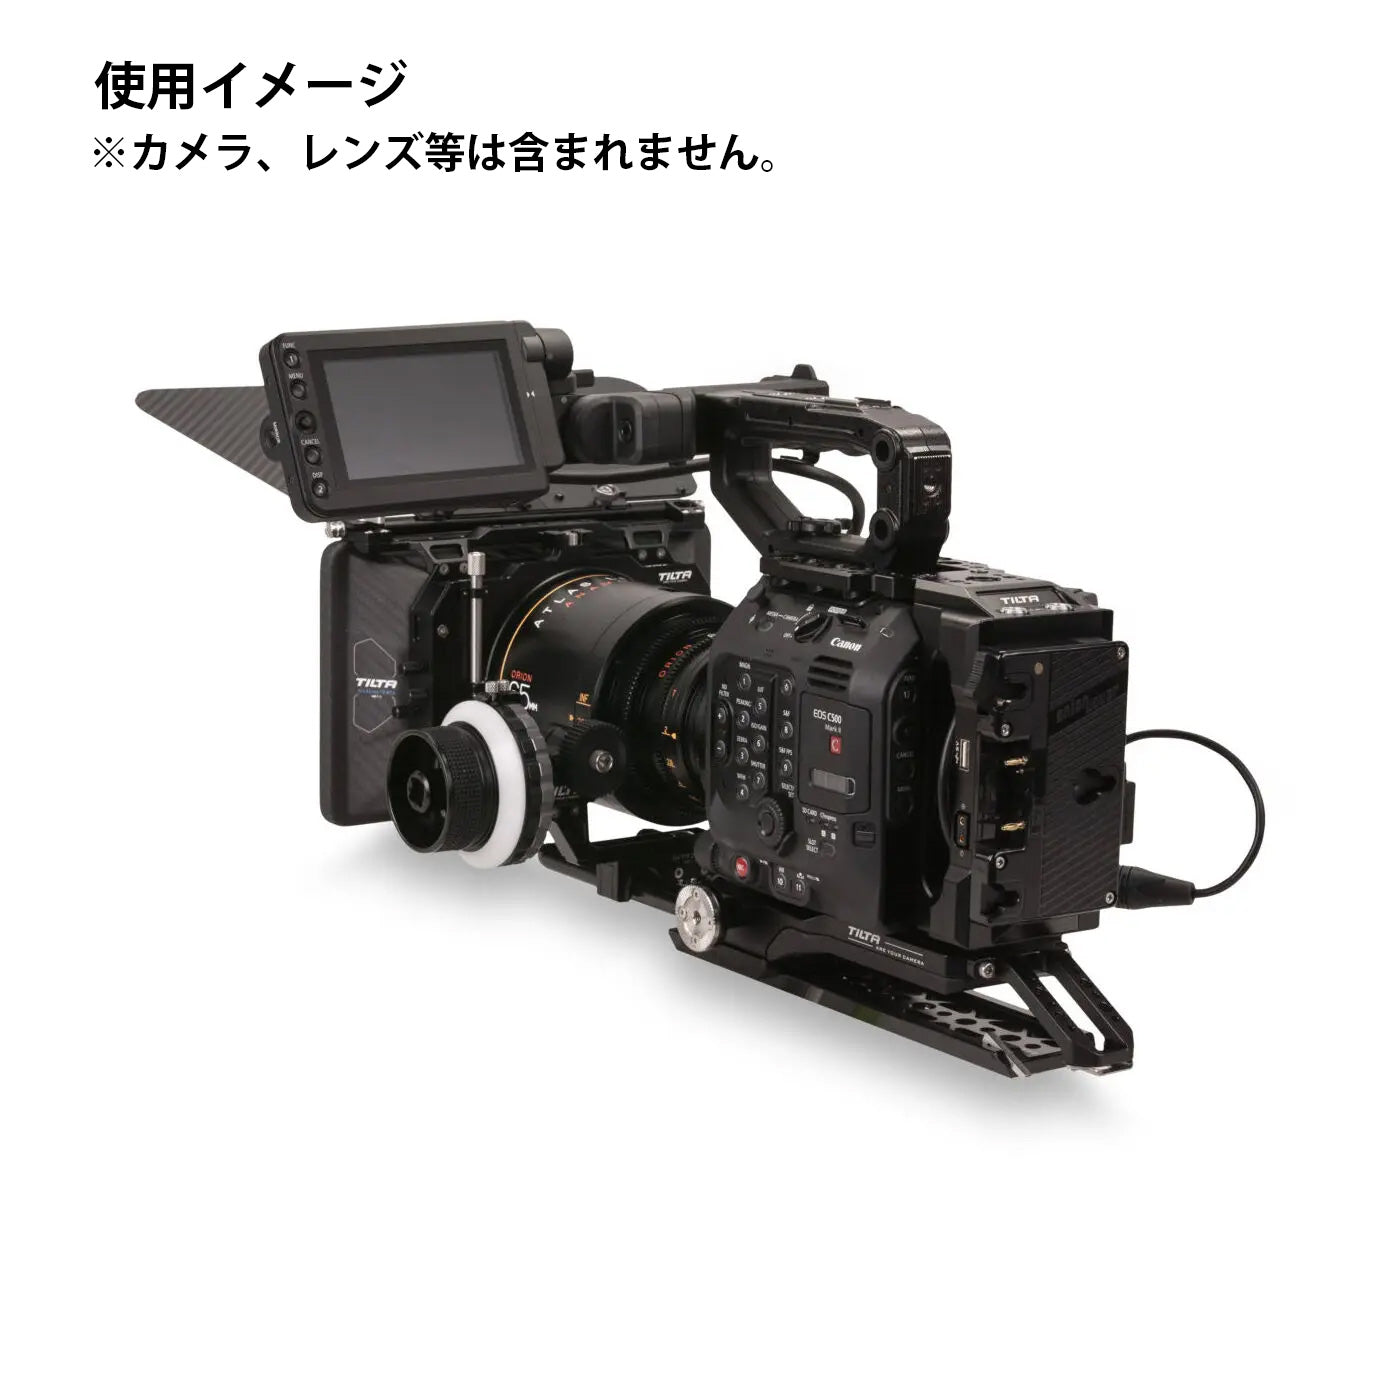 TILTA(ティルタ) Camera Cage for Canon C500 Mk II/C300 Mk III Kit C - Gold Mount(アントンマウント) ES-T19-C-AB